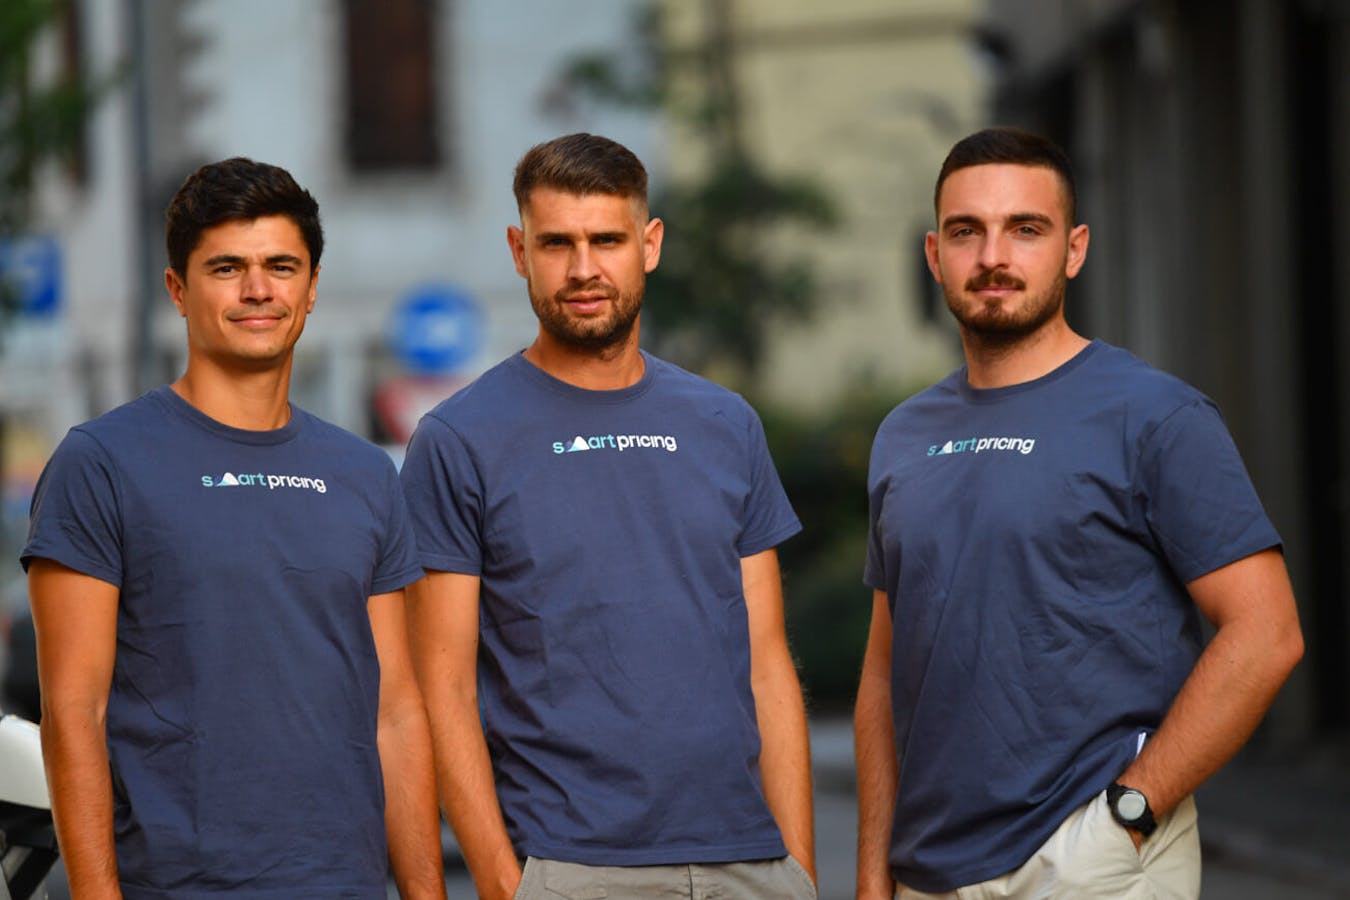 Drei Gründer von Smartpricing: Luca Rodella, Tommaso Centonze und Eugenio Bancaro